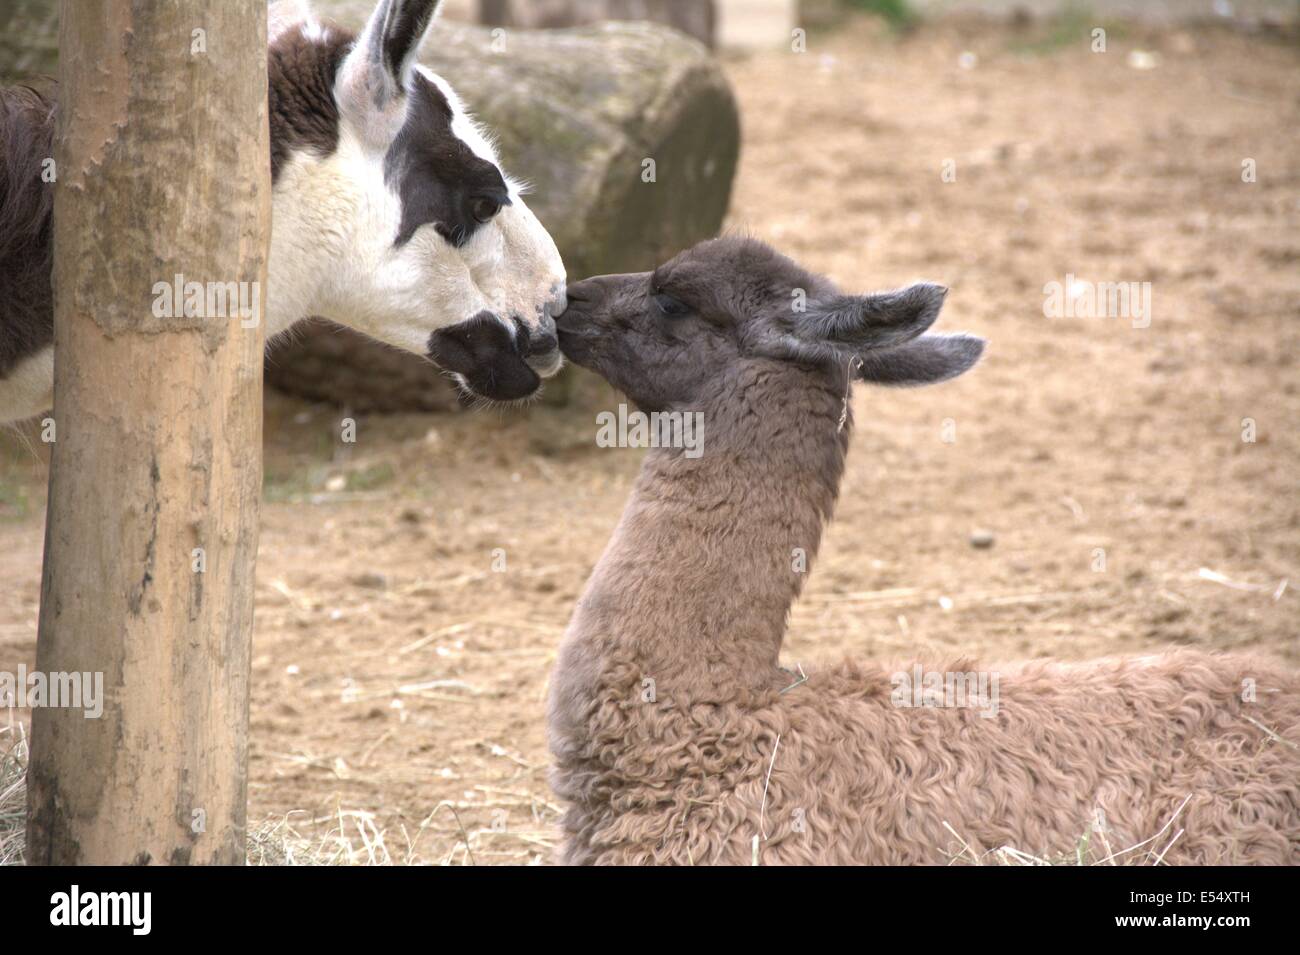 Mother llama and child llama kissing Stock Photo